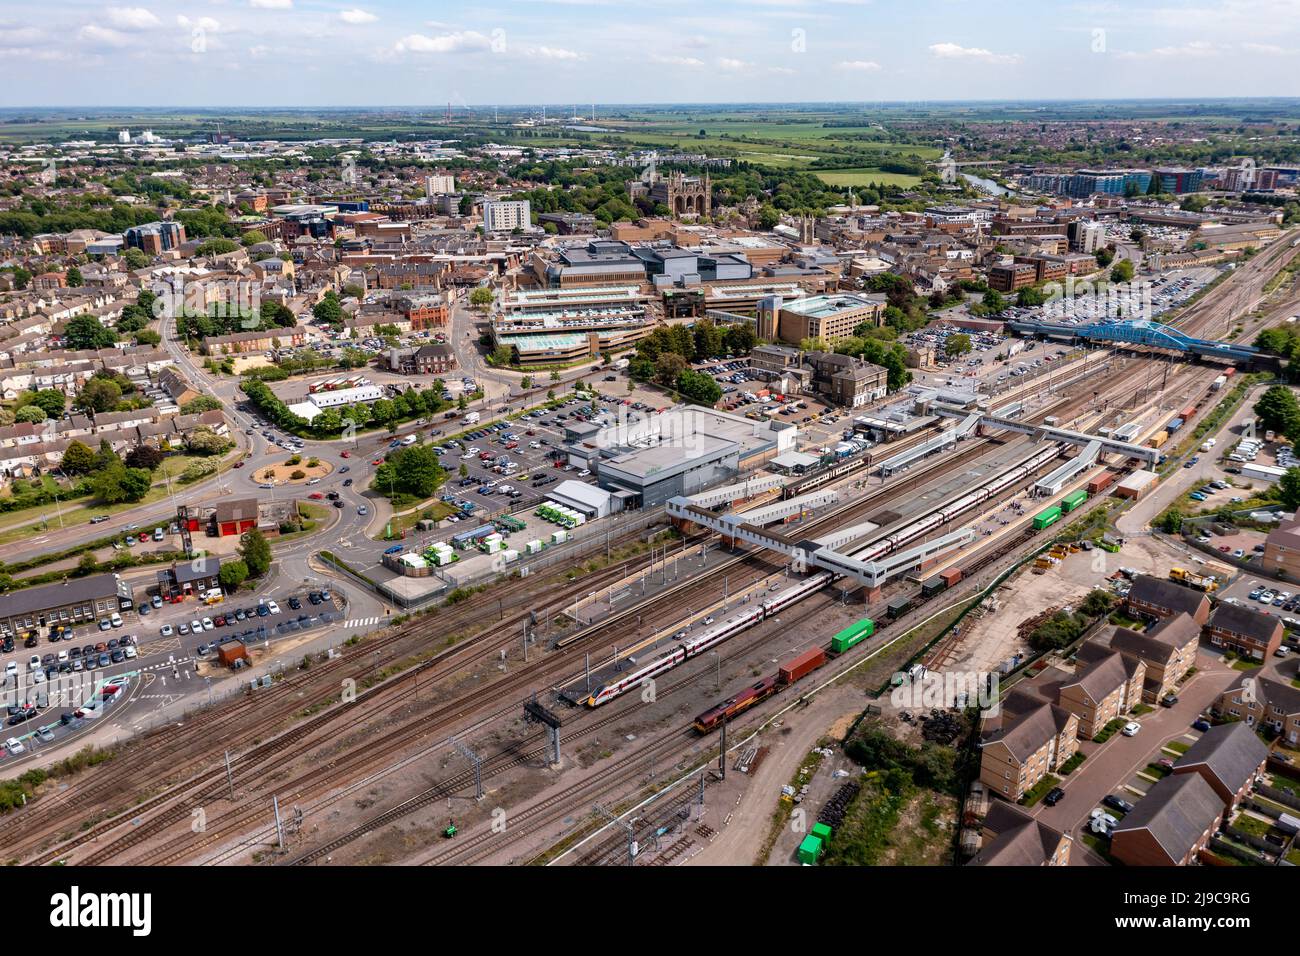 Vue aérienne sur le paysage des trains de voyageurs et de marchandises qui attendent sur les quais de la gare de Peterborough, sur la ligne principale de la côte est Banque D'Images